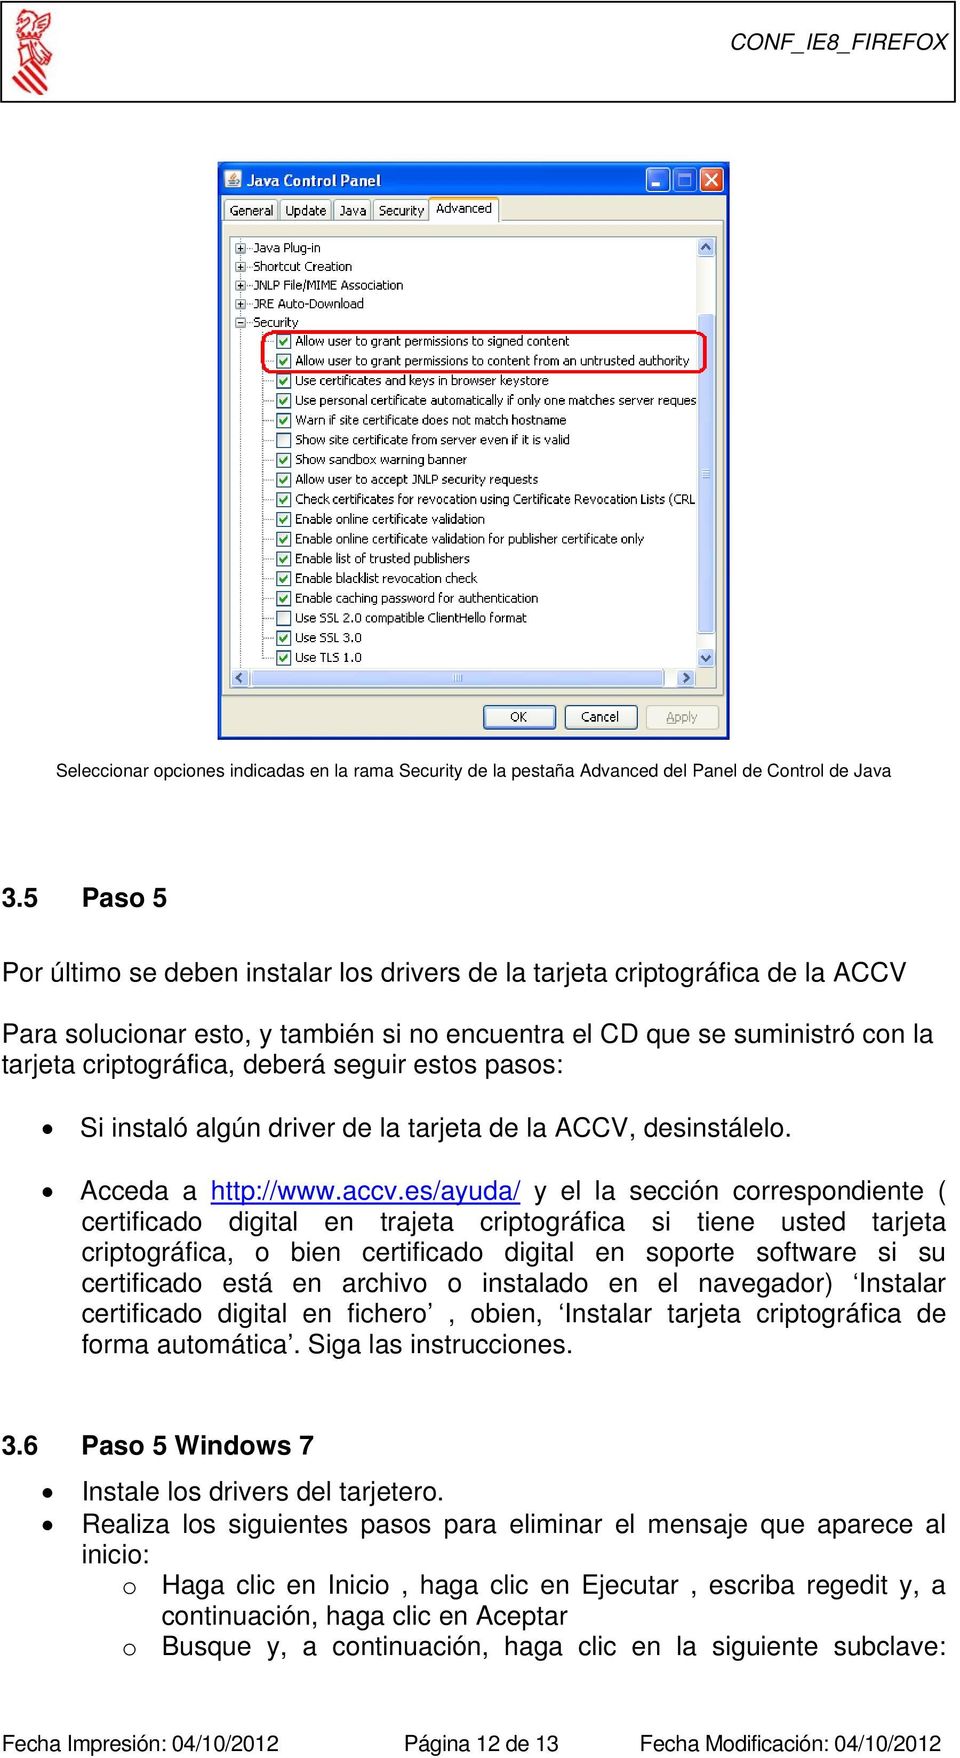 seguir estos pasos: Si instaló algún driver de la tarjeta de la ACCV, desinstálelo. Acceda a http://www.accv.